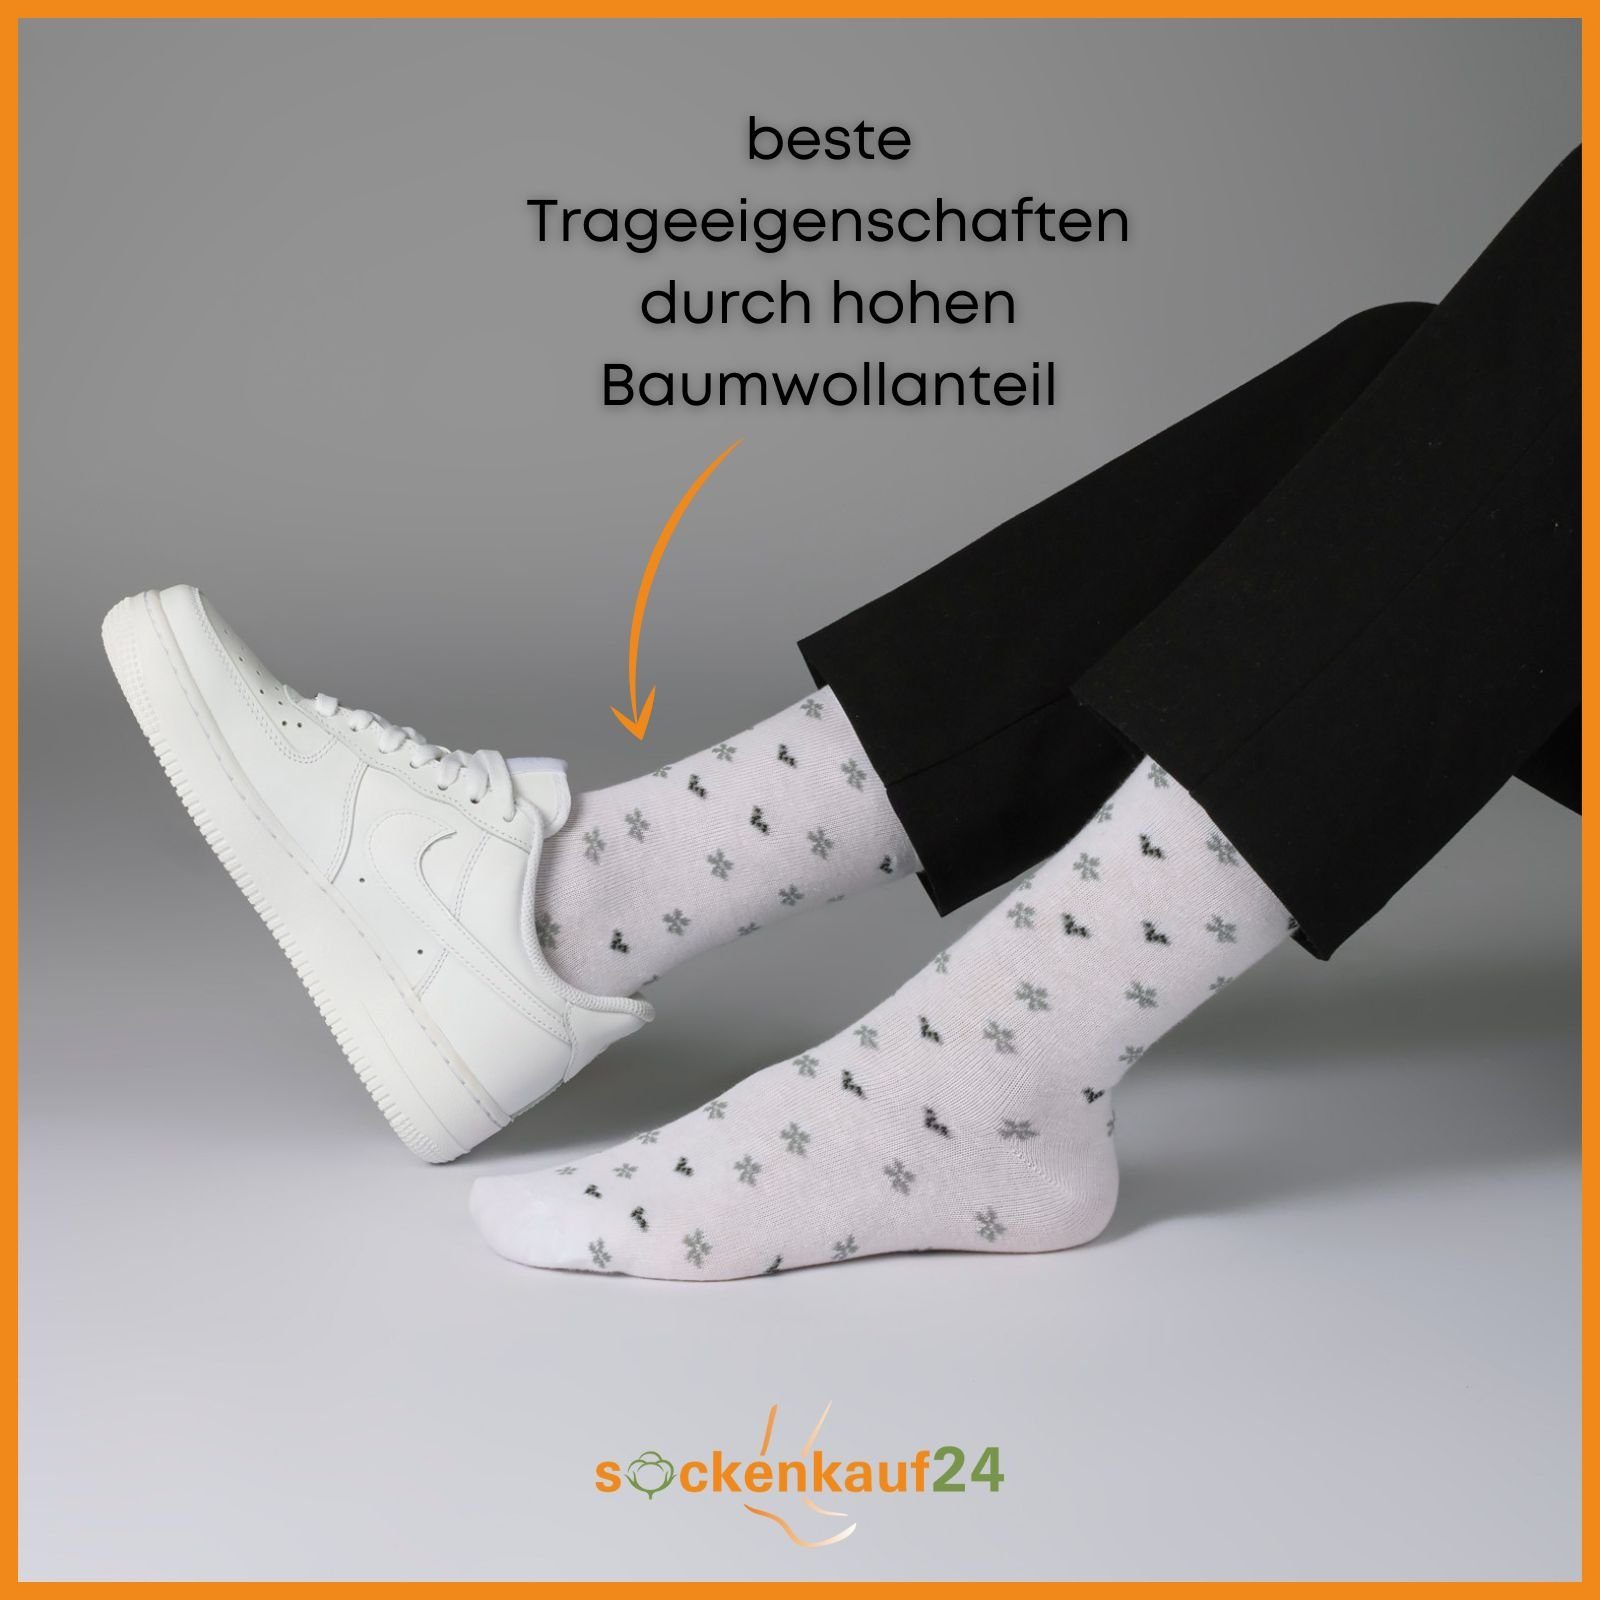 10 sockenkauf24 Punkte Streifen Paar WP 35-38) Basicsocken Damen Socken (34911/1, Mehrfarbig Herzen Baumwolle Maritim